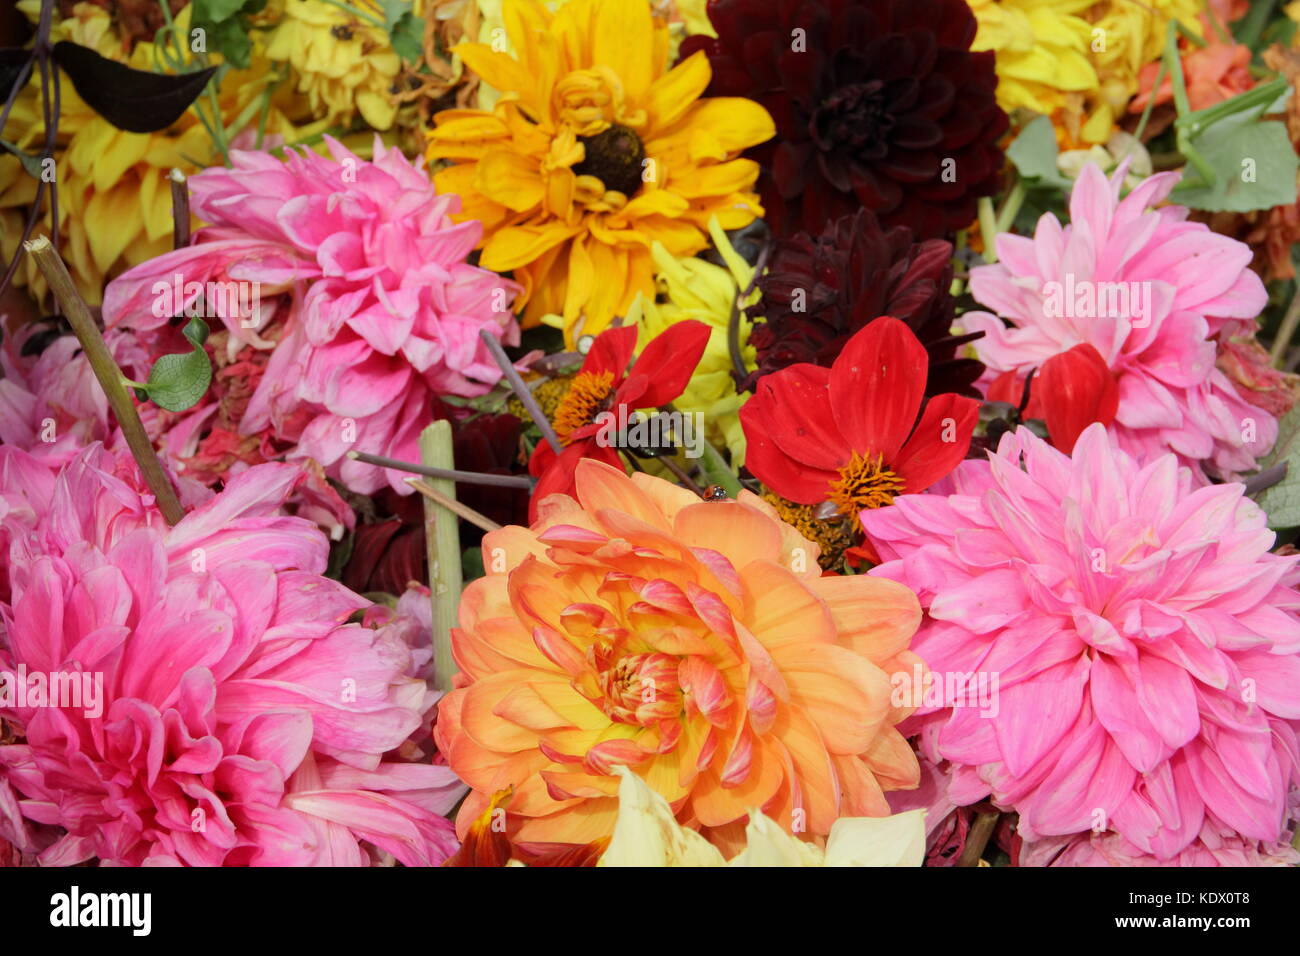 Vient buter des fleurs de dahlia, enlevé pour promouvoir la floraison continue Banque D'Images